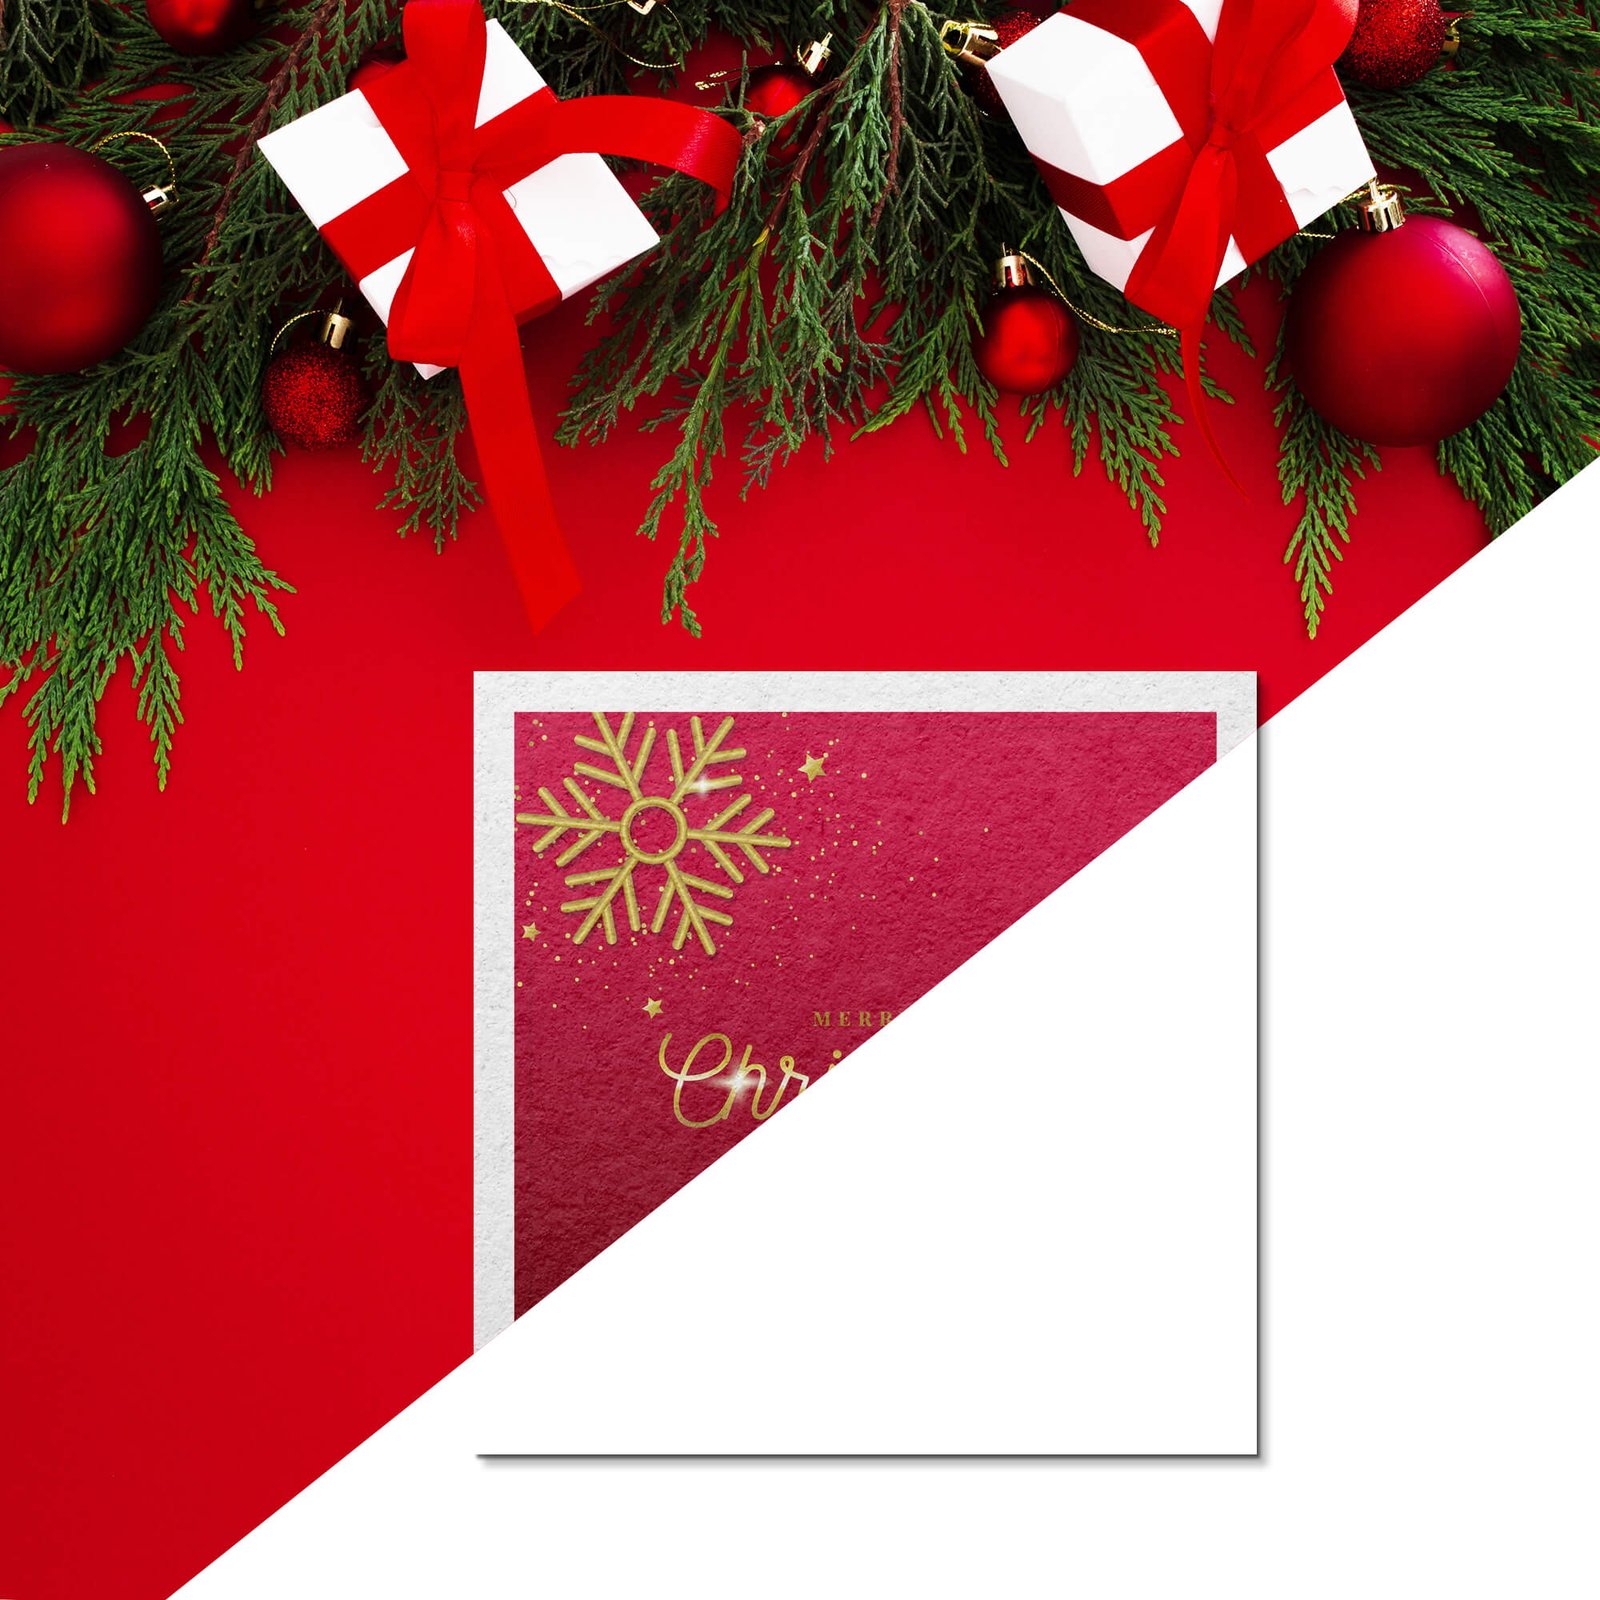 Editable Free Christmas Card Mockup PSD Template